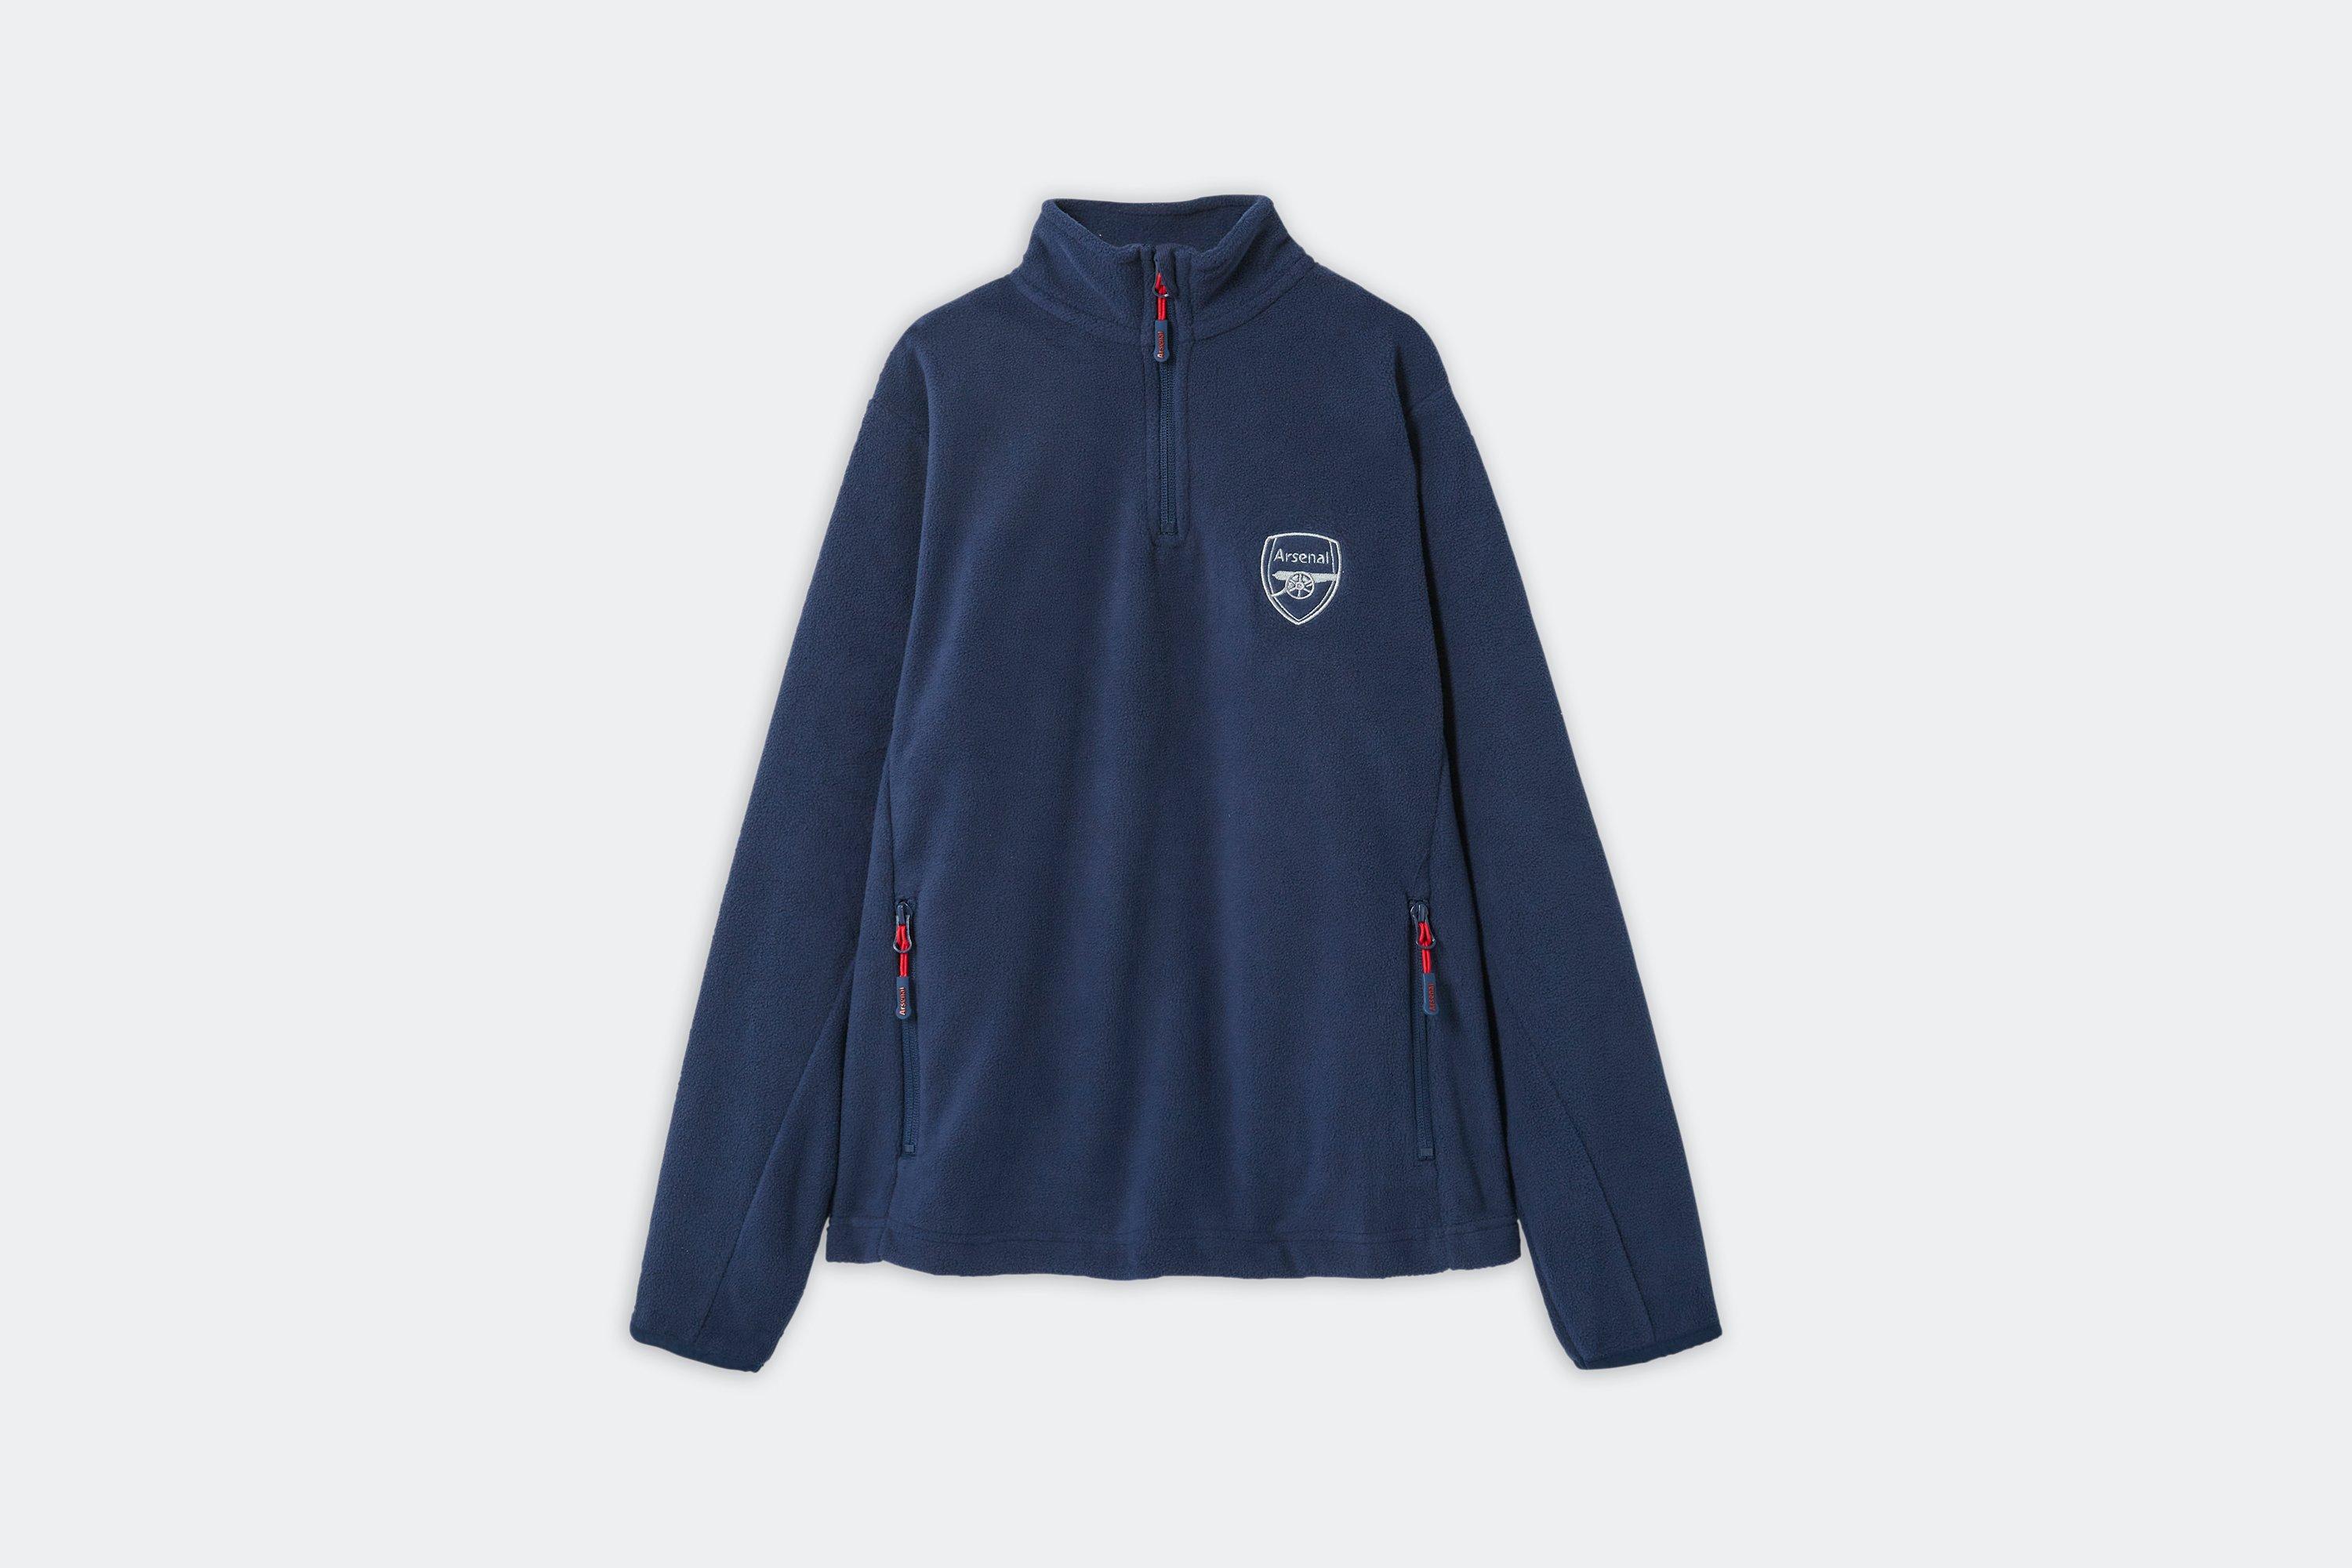 Arsenal Kids Navy 1/4 Zip Fleece Jacket, Multicolor